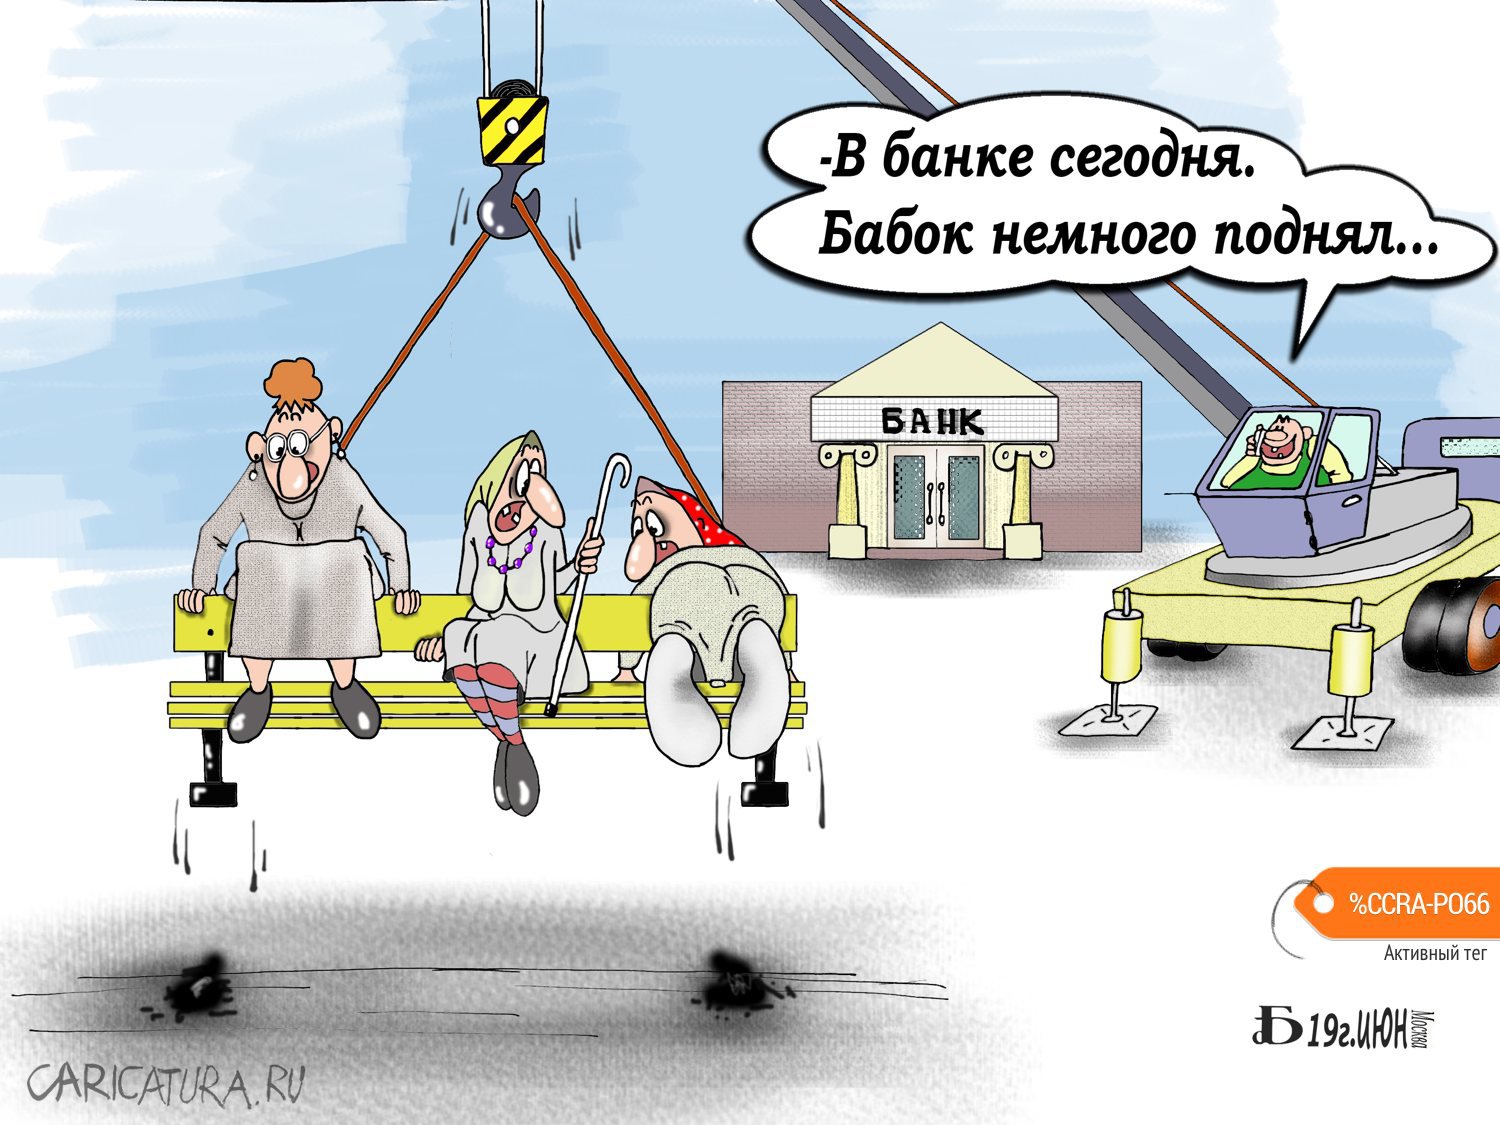 Карикатура "Про бабок", Борис Демин